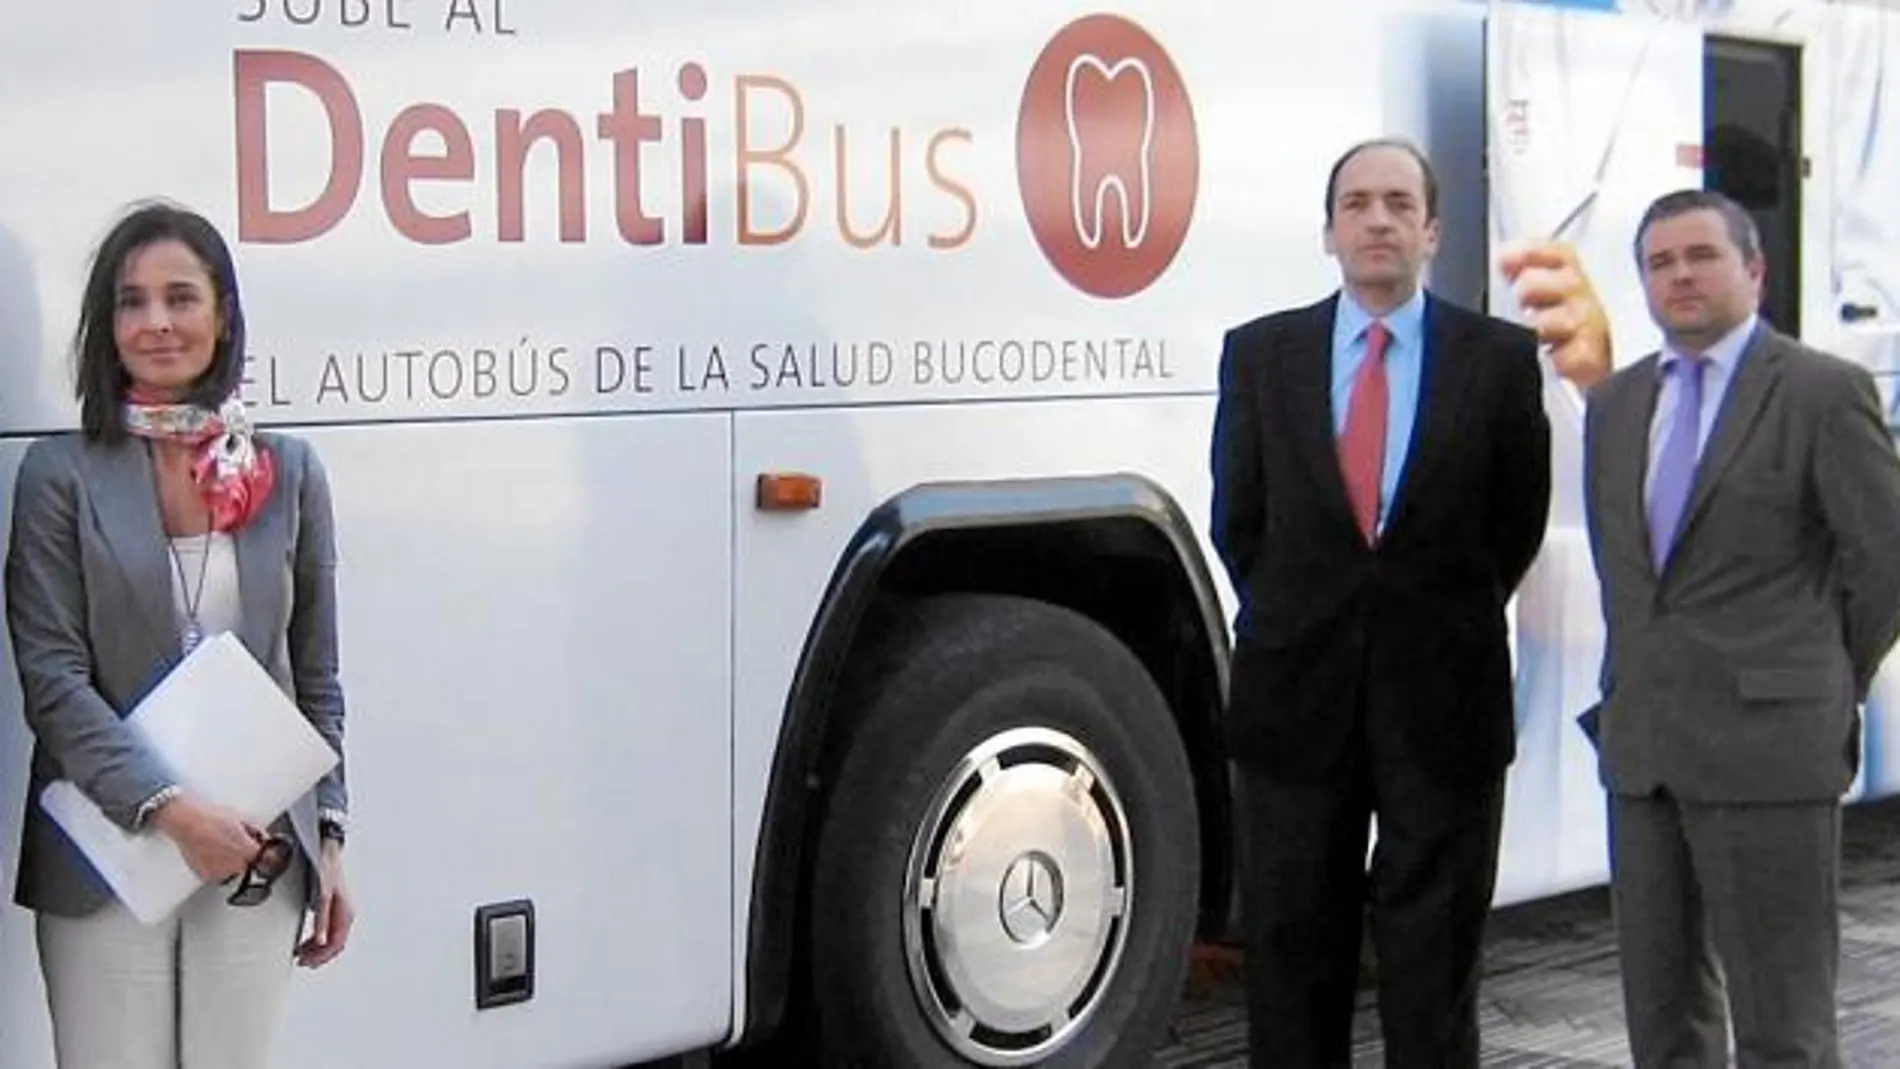 El Dentibús estará hoy en el Corte Inglés de Nuevo Centro, en Valencia